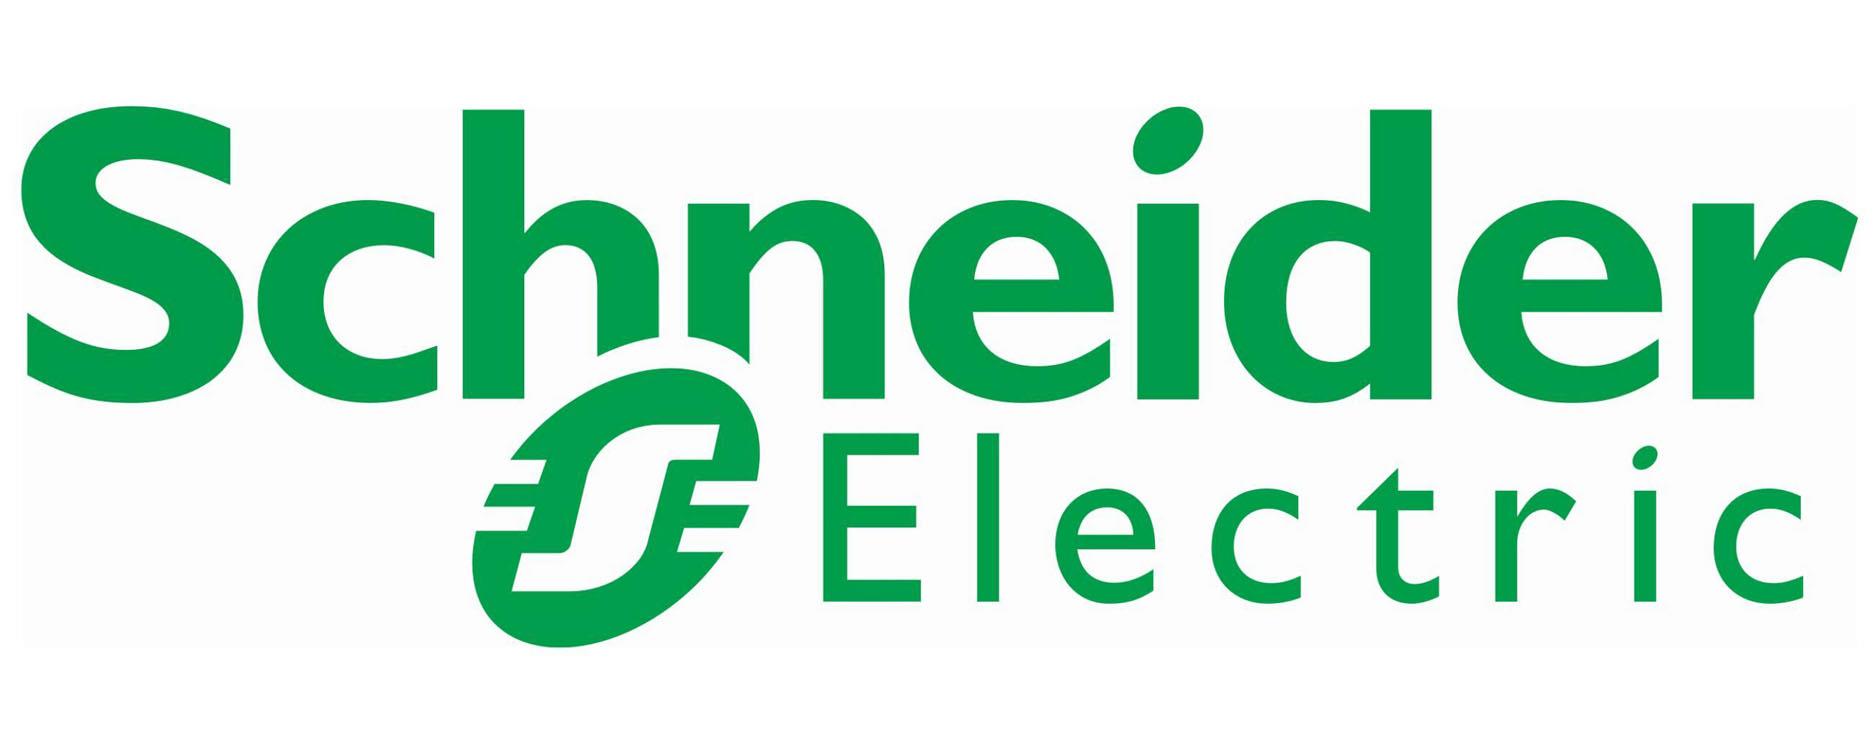 Logo Schneider Electric : représentation visuelle du logo de Schneider Electric, une entreprise internationale spécialisée dans la gestion de l'énergie et de l'automatisation. Logo Schneider Electric : représentation visuelle du logo de Schneider Electric, une entreprise internationale spécialisée dans la gestion de l'énergie et de l'automatisation.